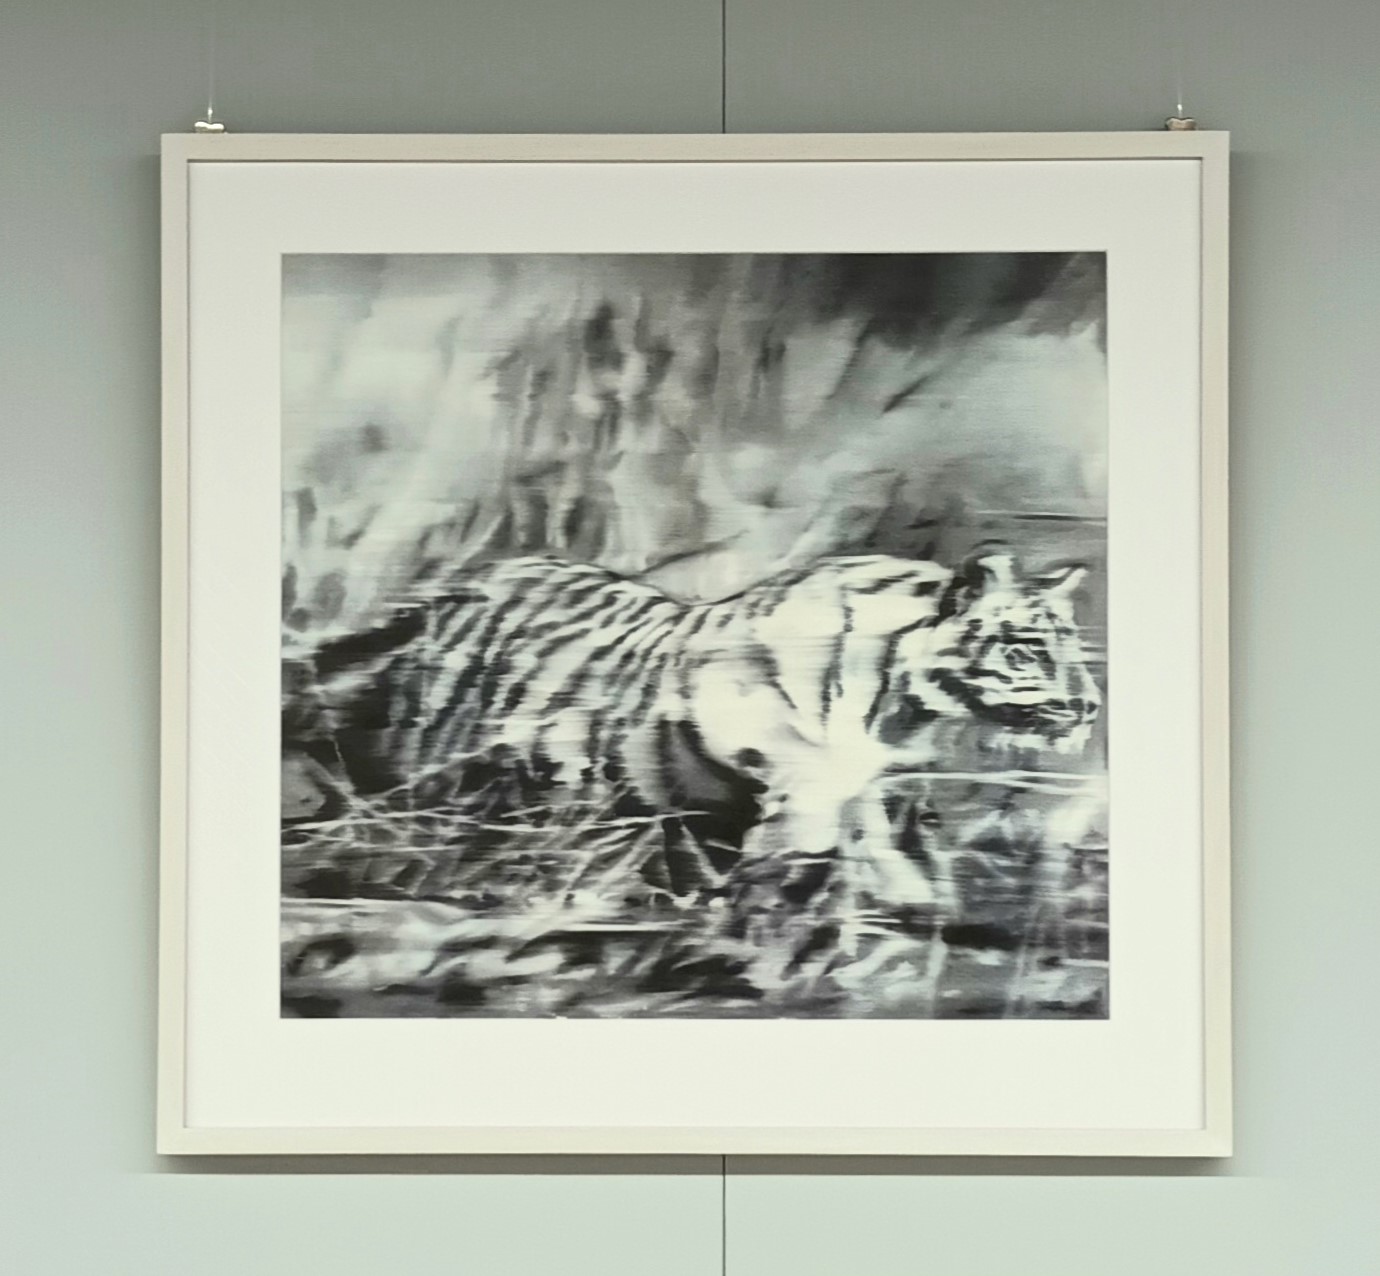 Gerhard Richter gerahmter Kunstdruck "Tiger" in limiterter Auflage ( 500 Exemplare )